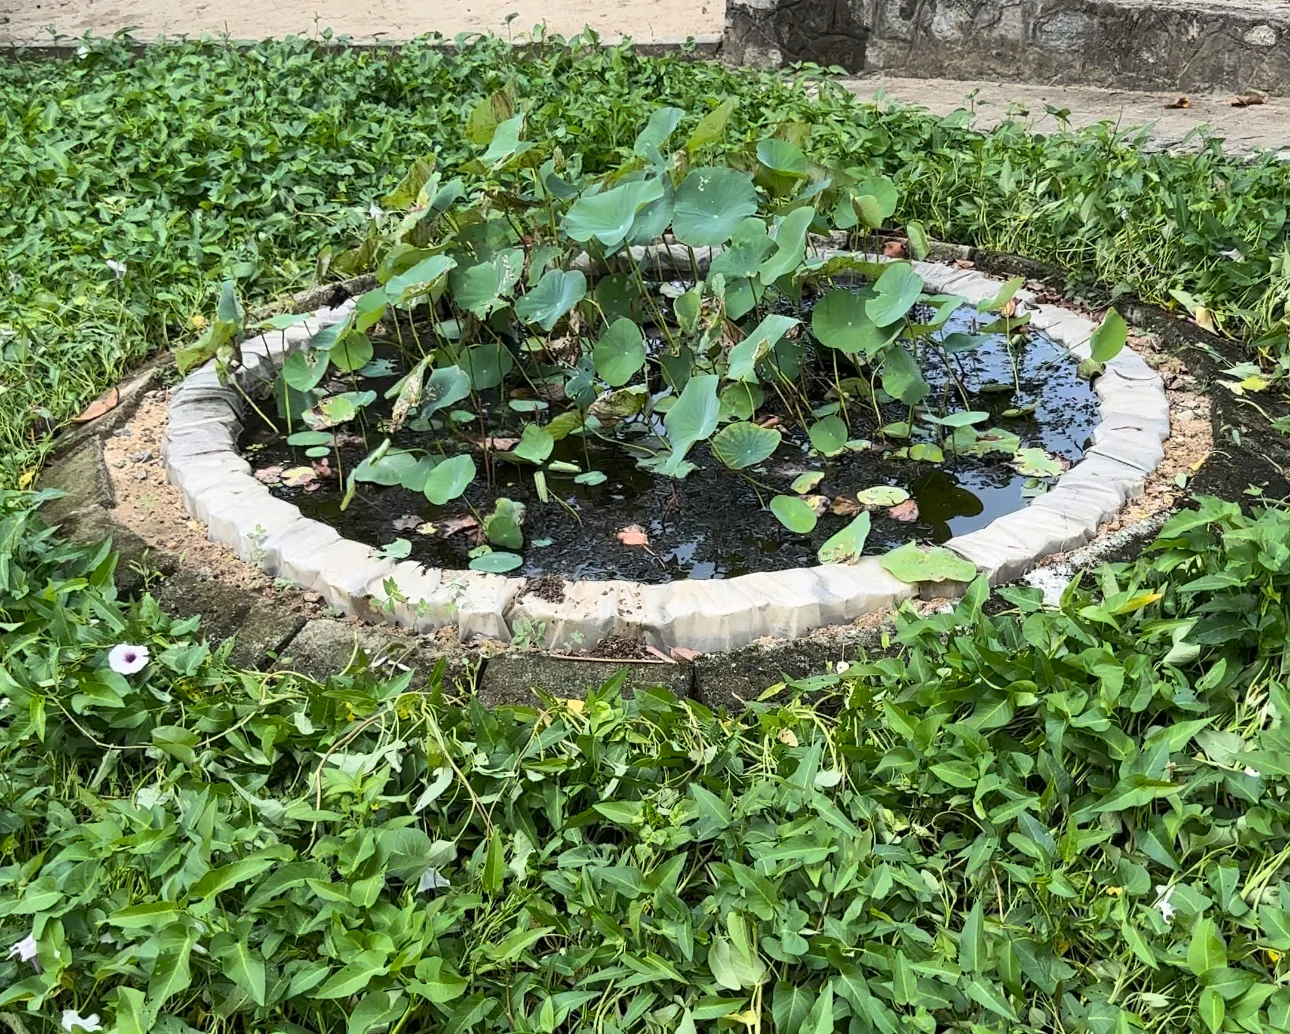 Teich mit Wasserpflanzen, umgeben von anderen Pflanzen